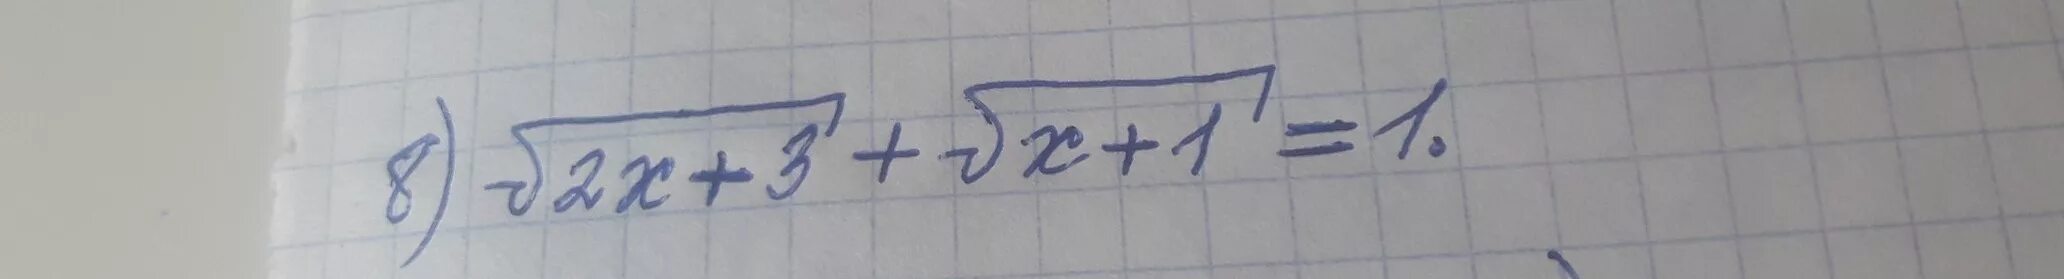 Корень 3x 10 9. 1/Корень х. Корень из х-2 - корень из 2х-1. Корень из 3 2х корень из 1-х 1. Корень из 3х-1=2.